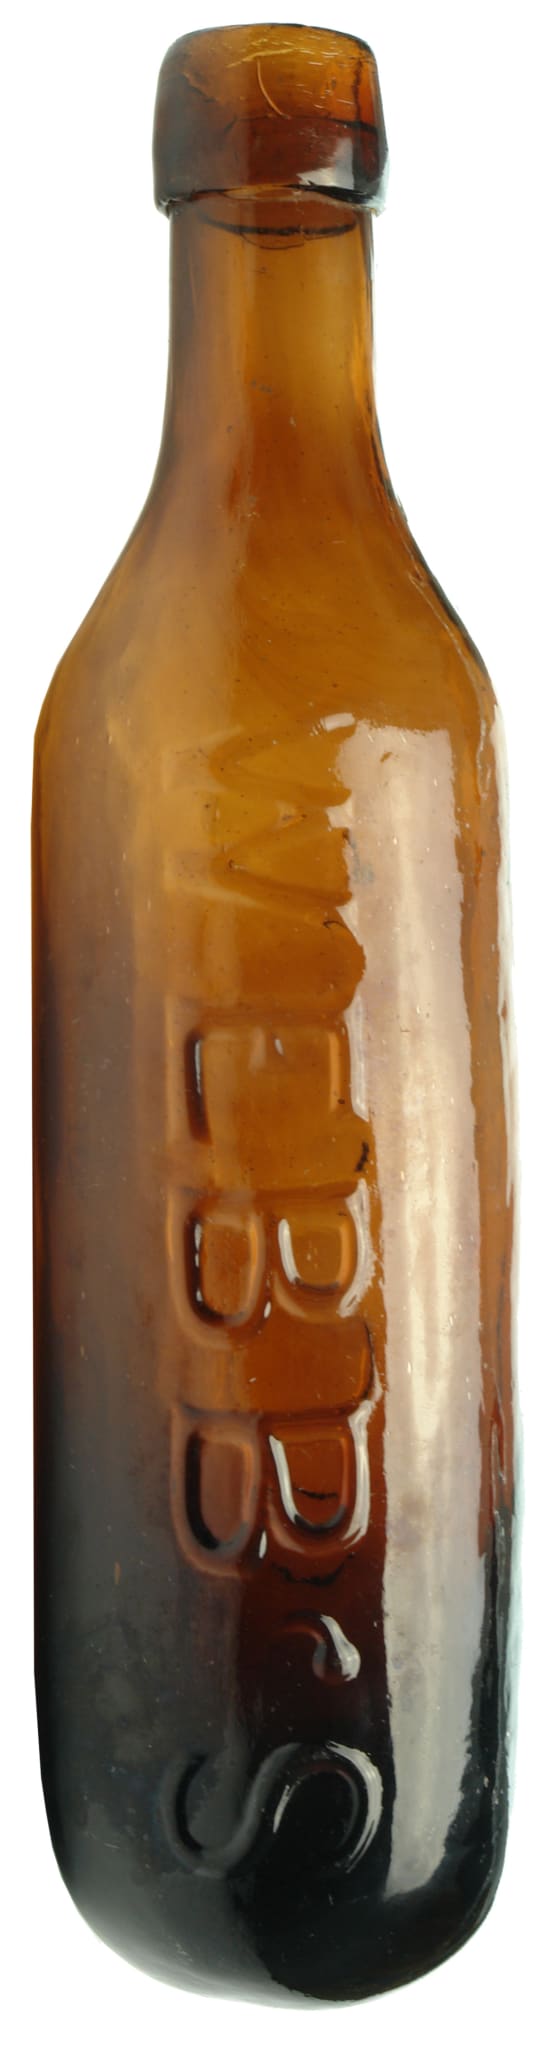 Webb's London Amber glass Maugham Bottle